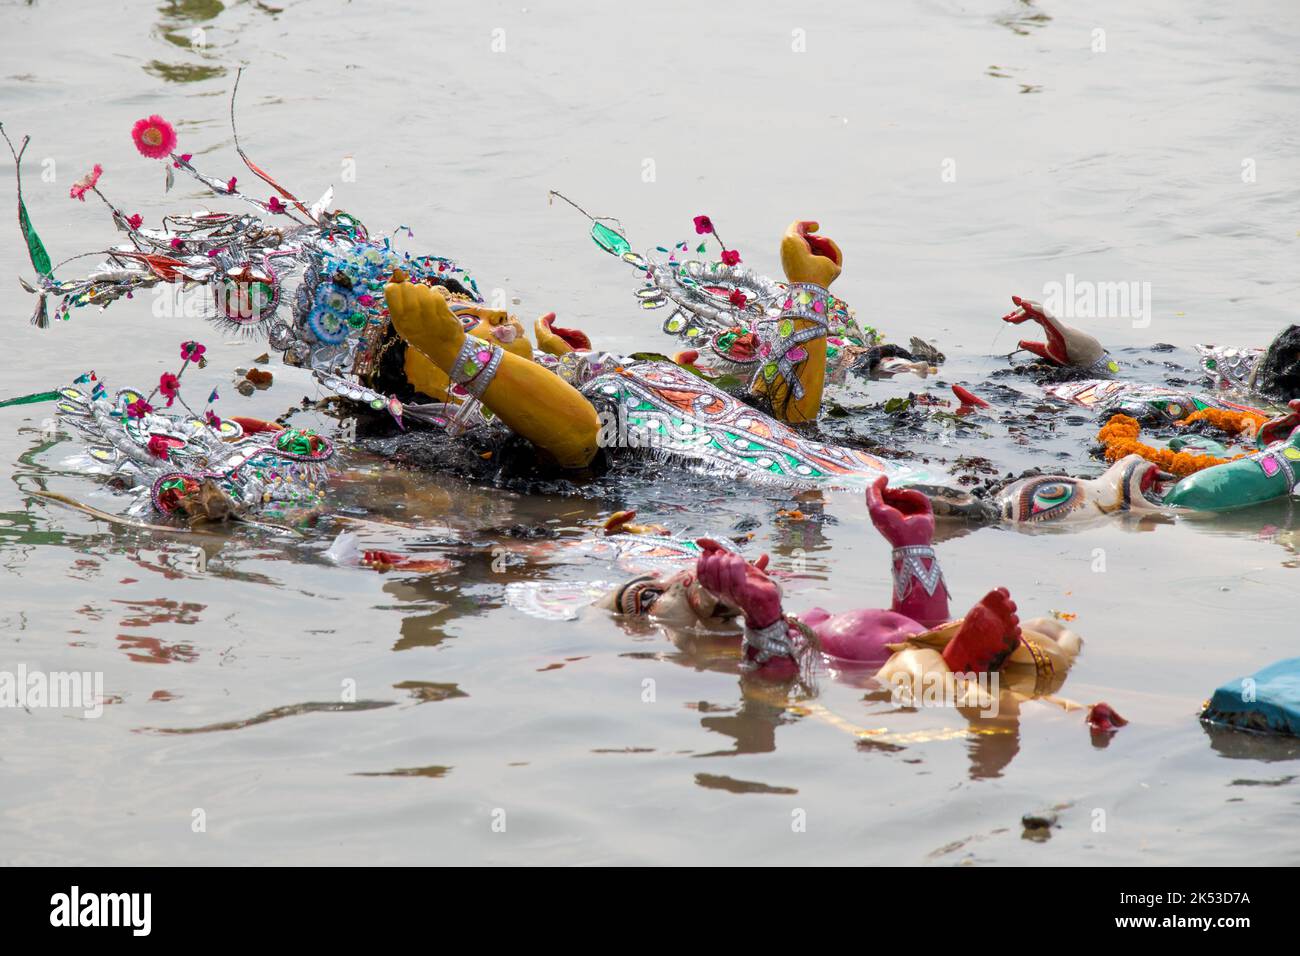 Idol della dea Durga è immerso nel fiume santo Ganges, alla fine del festival Durga Puja. L'evento si chiama Bisorjon in lingua bengalese. Foto Stock